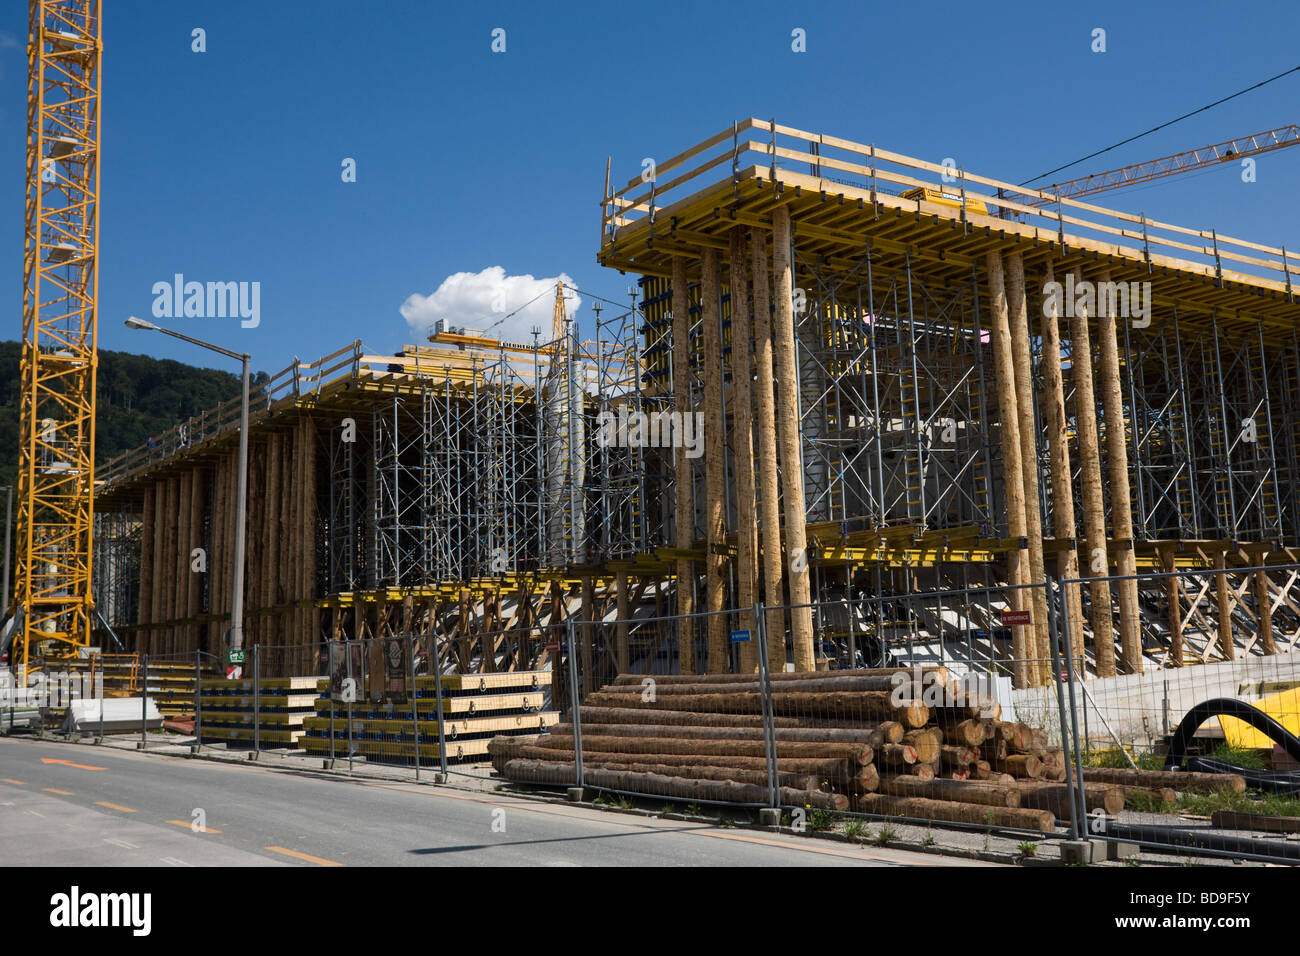 'Les troncs d'arbres utilisés pour la construction de bâtiment, de l'UE Autriche Salzbourg Banque D'Images